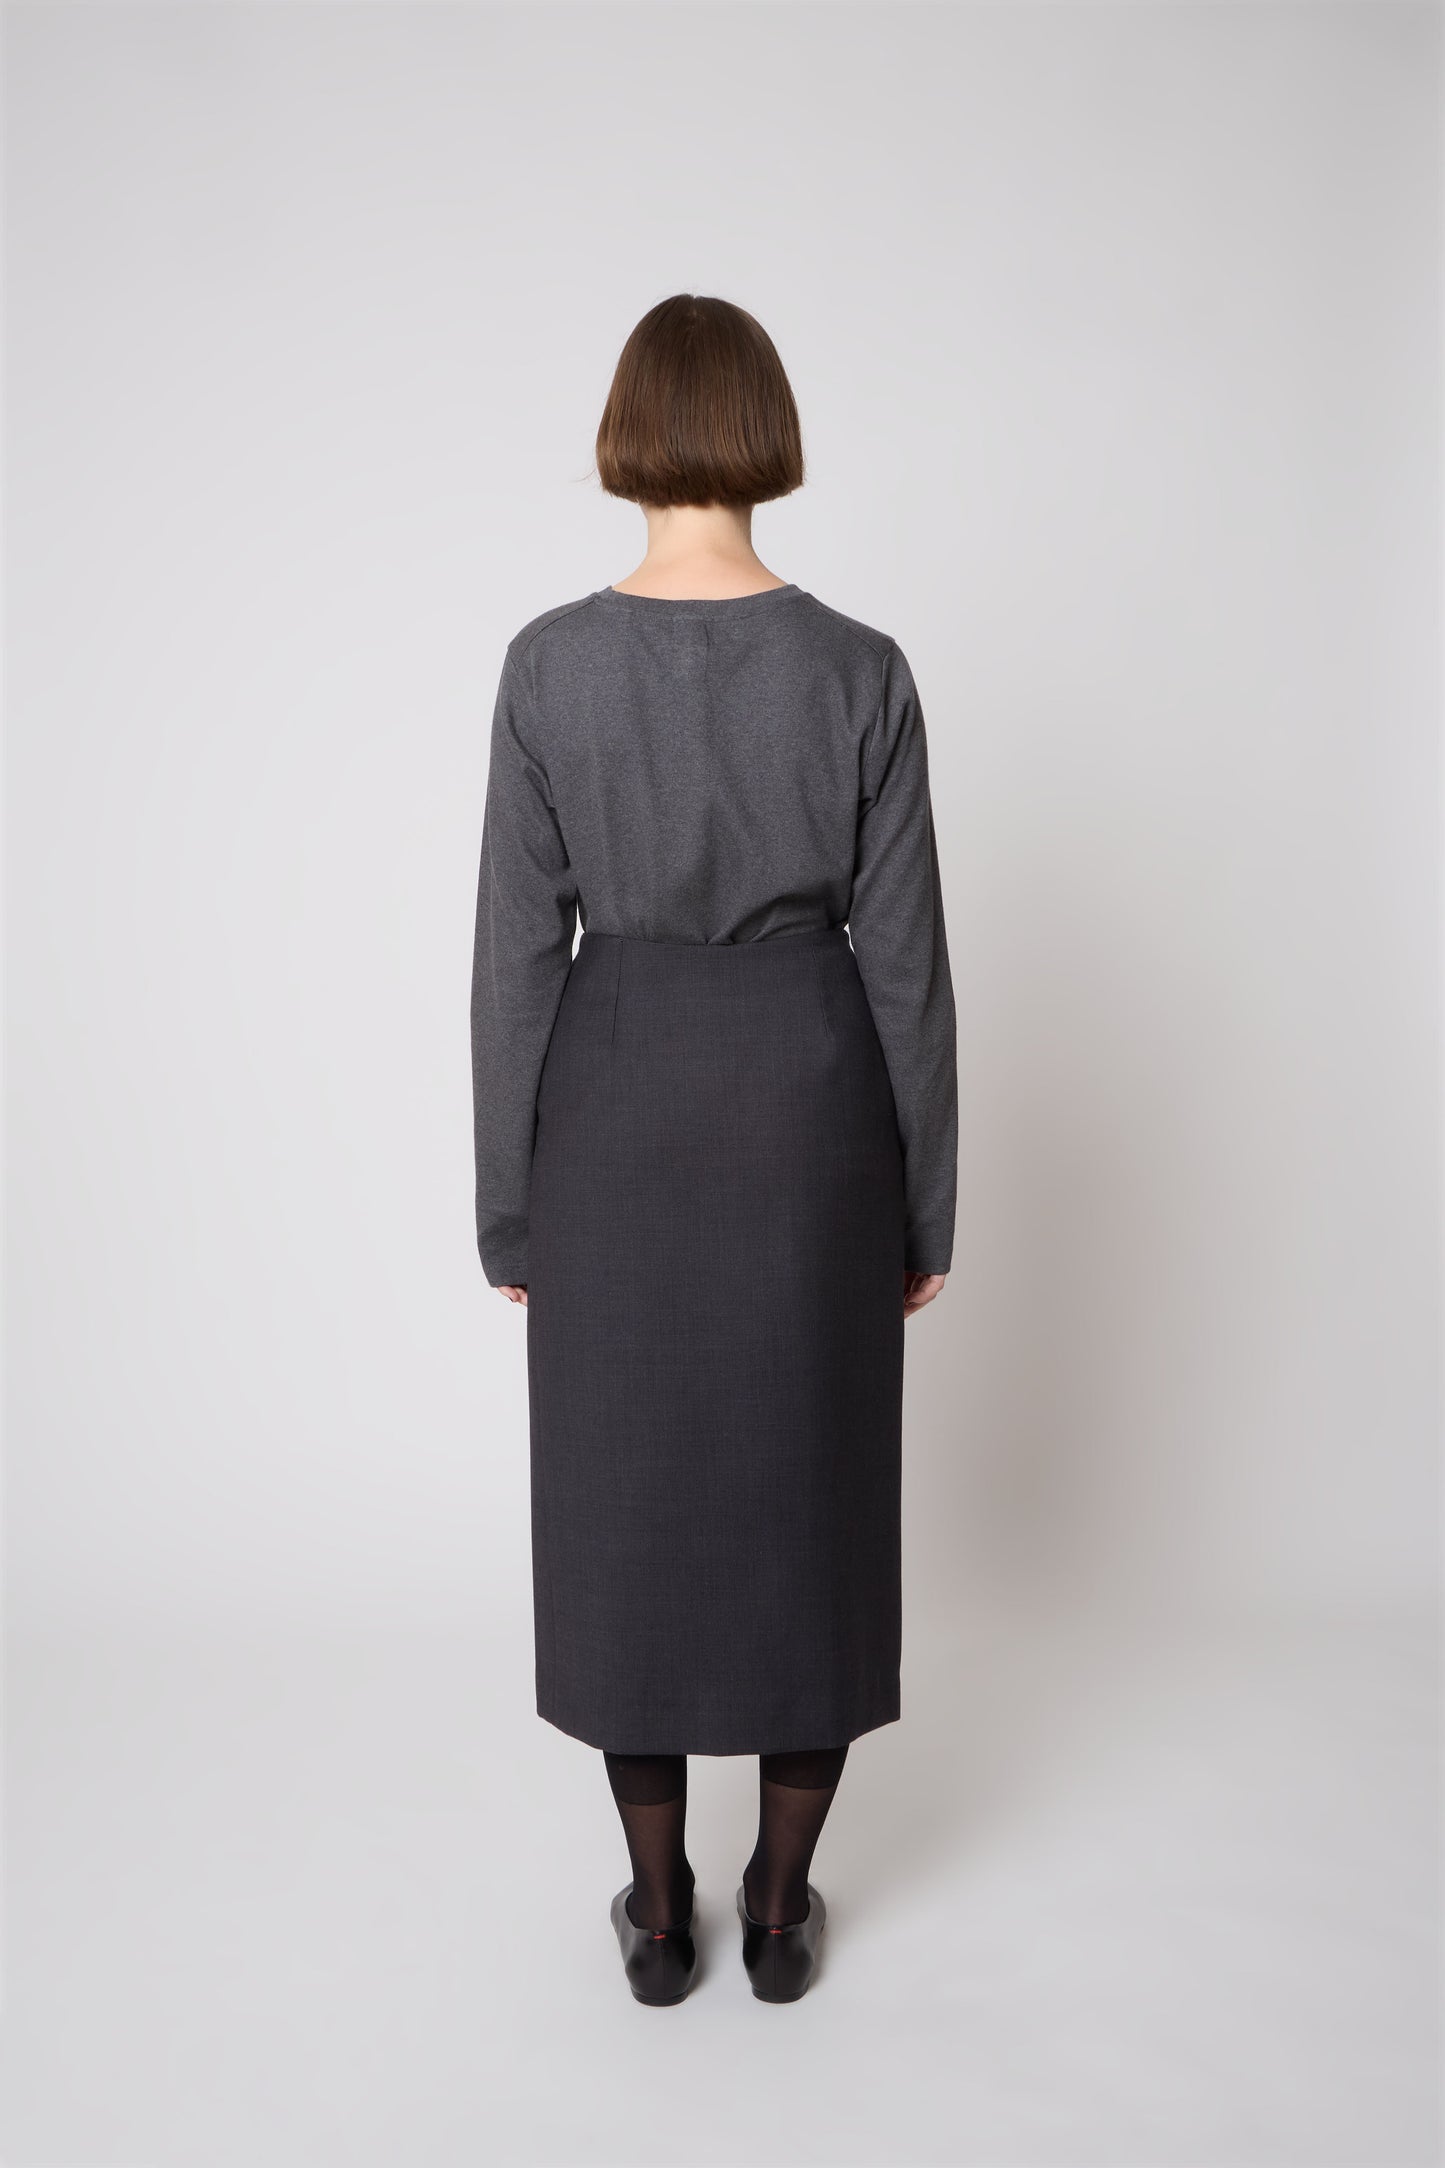 Madeleine Skirt in Grey Wool